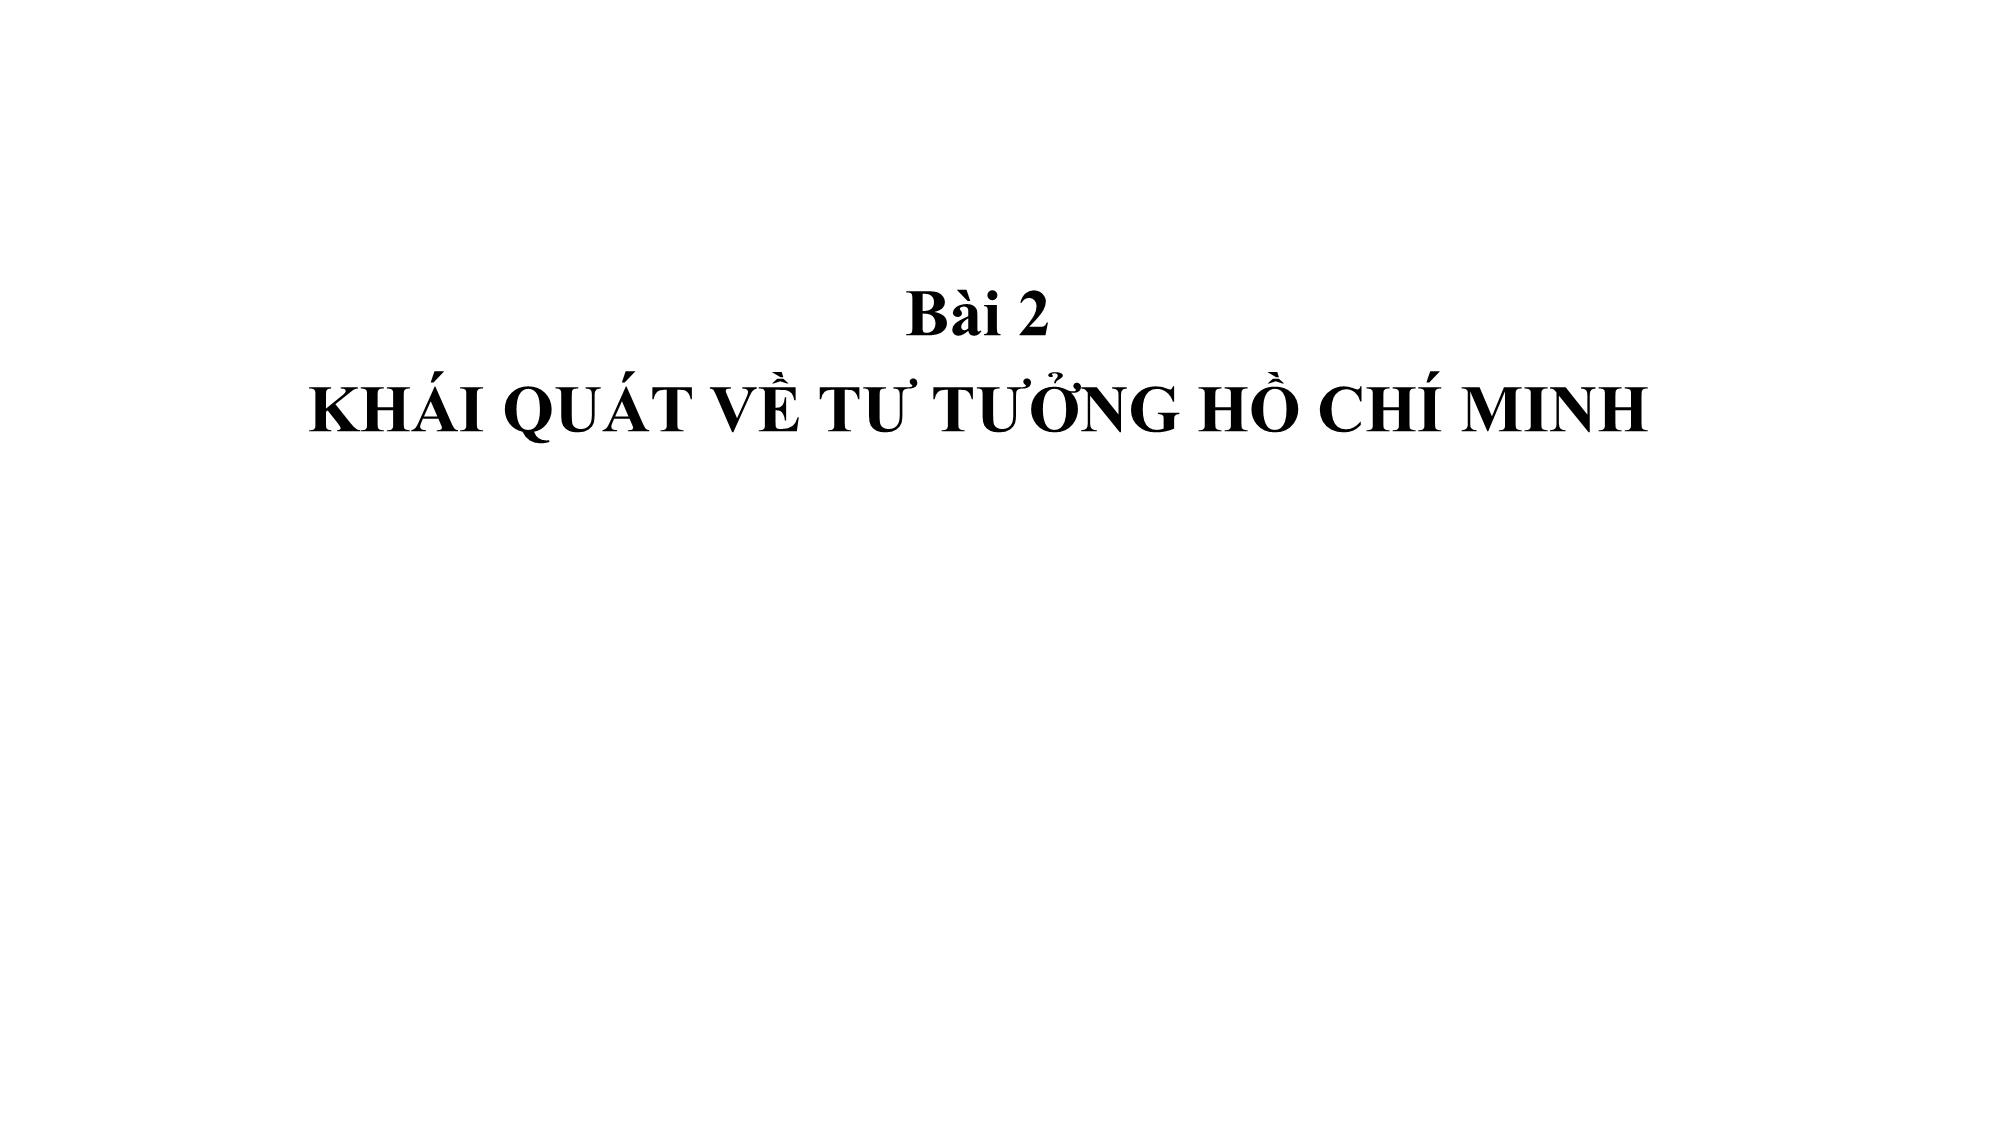 Bài giảng Chính trị - Bài 2: Khái quát về tư tưởng Hồ Chí Minh trang 1